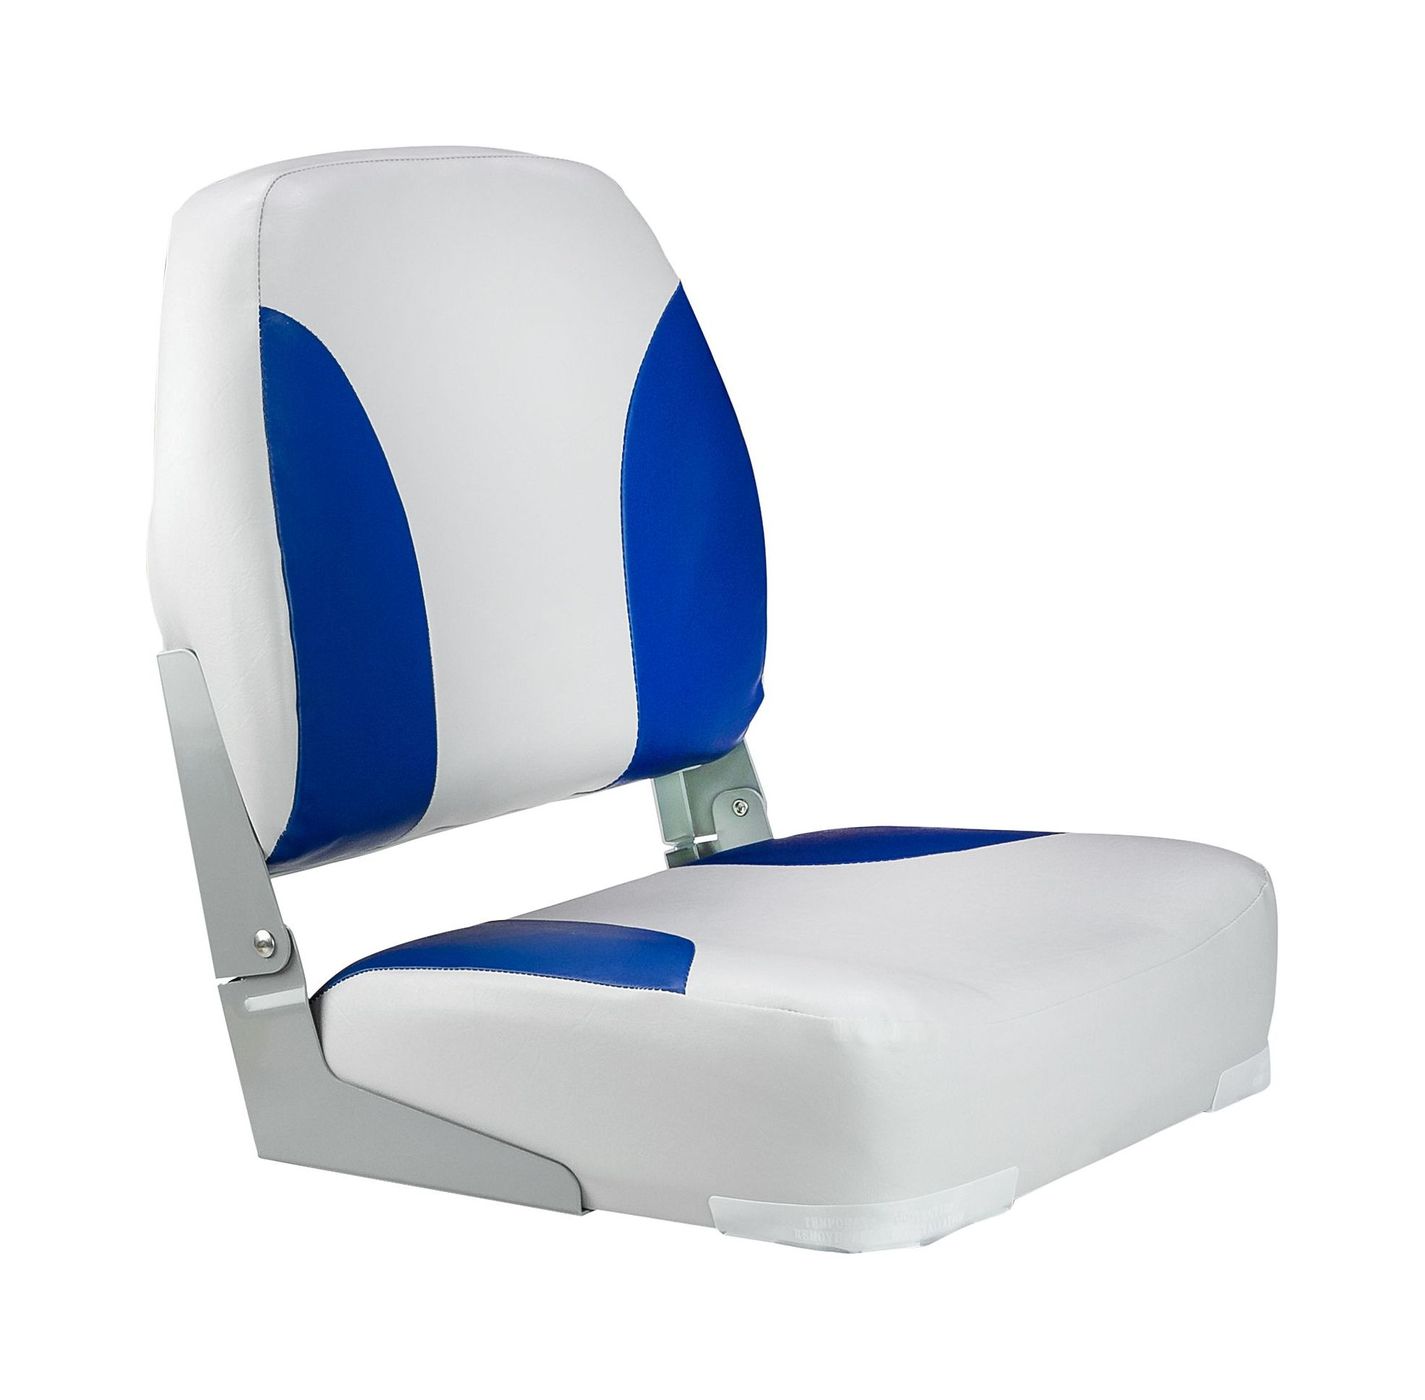 Кресло мягкое складное Classic, обивка винил, цвет серый/синий, Marine Rocket 75102GB-MR кресло мягкое складное обивка винил серый синий marine rocket 75109gb mr